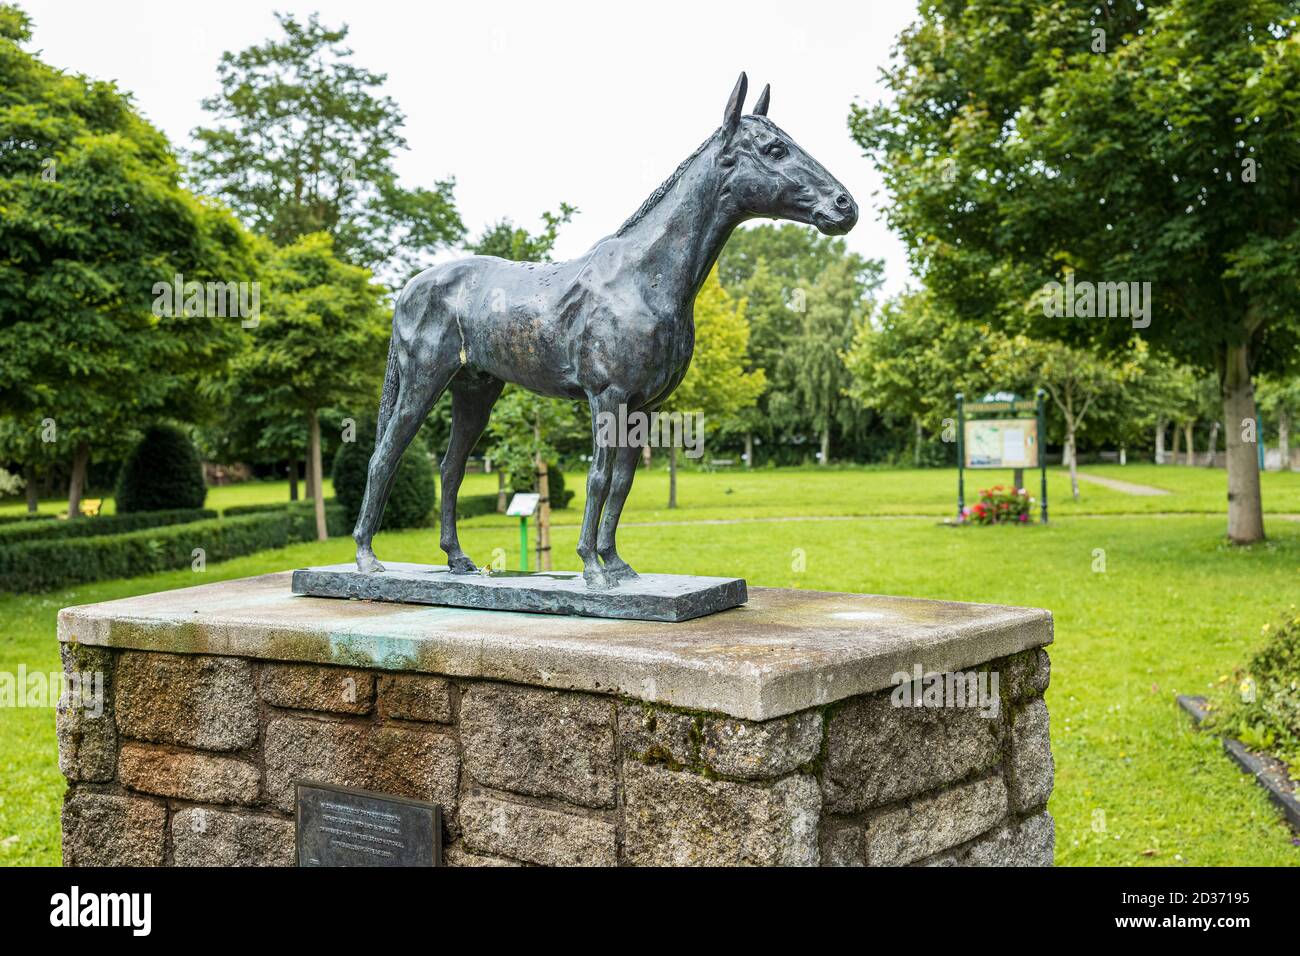 Estatuillas conmemorativas de bronce de caballos en el parque de Sant Brigids, Kill. Celebrando el éxito del padre e hijo Ted y Ruby Walsh ganando el G irlandés Foto de stock